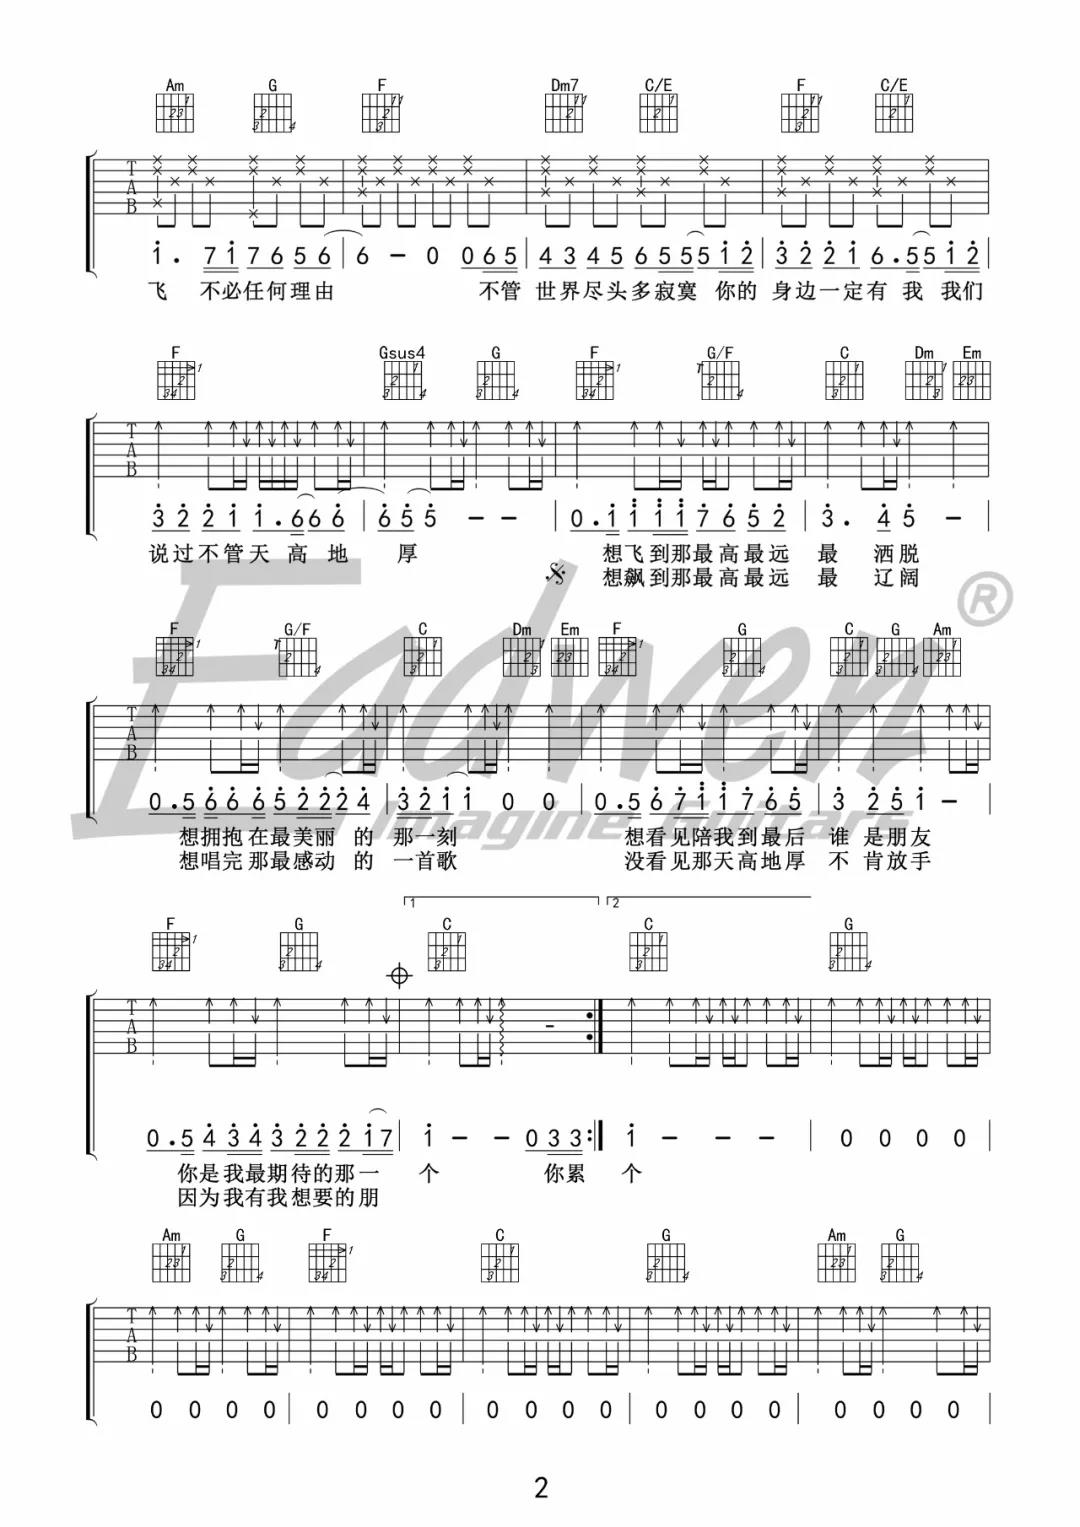 信乐团《天高地厚》吉他谱(C调)-Guitar Music Score